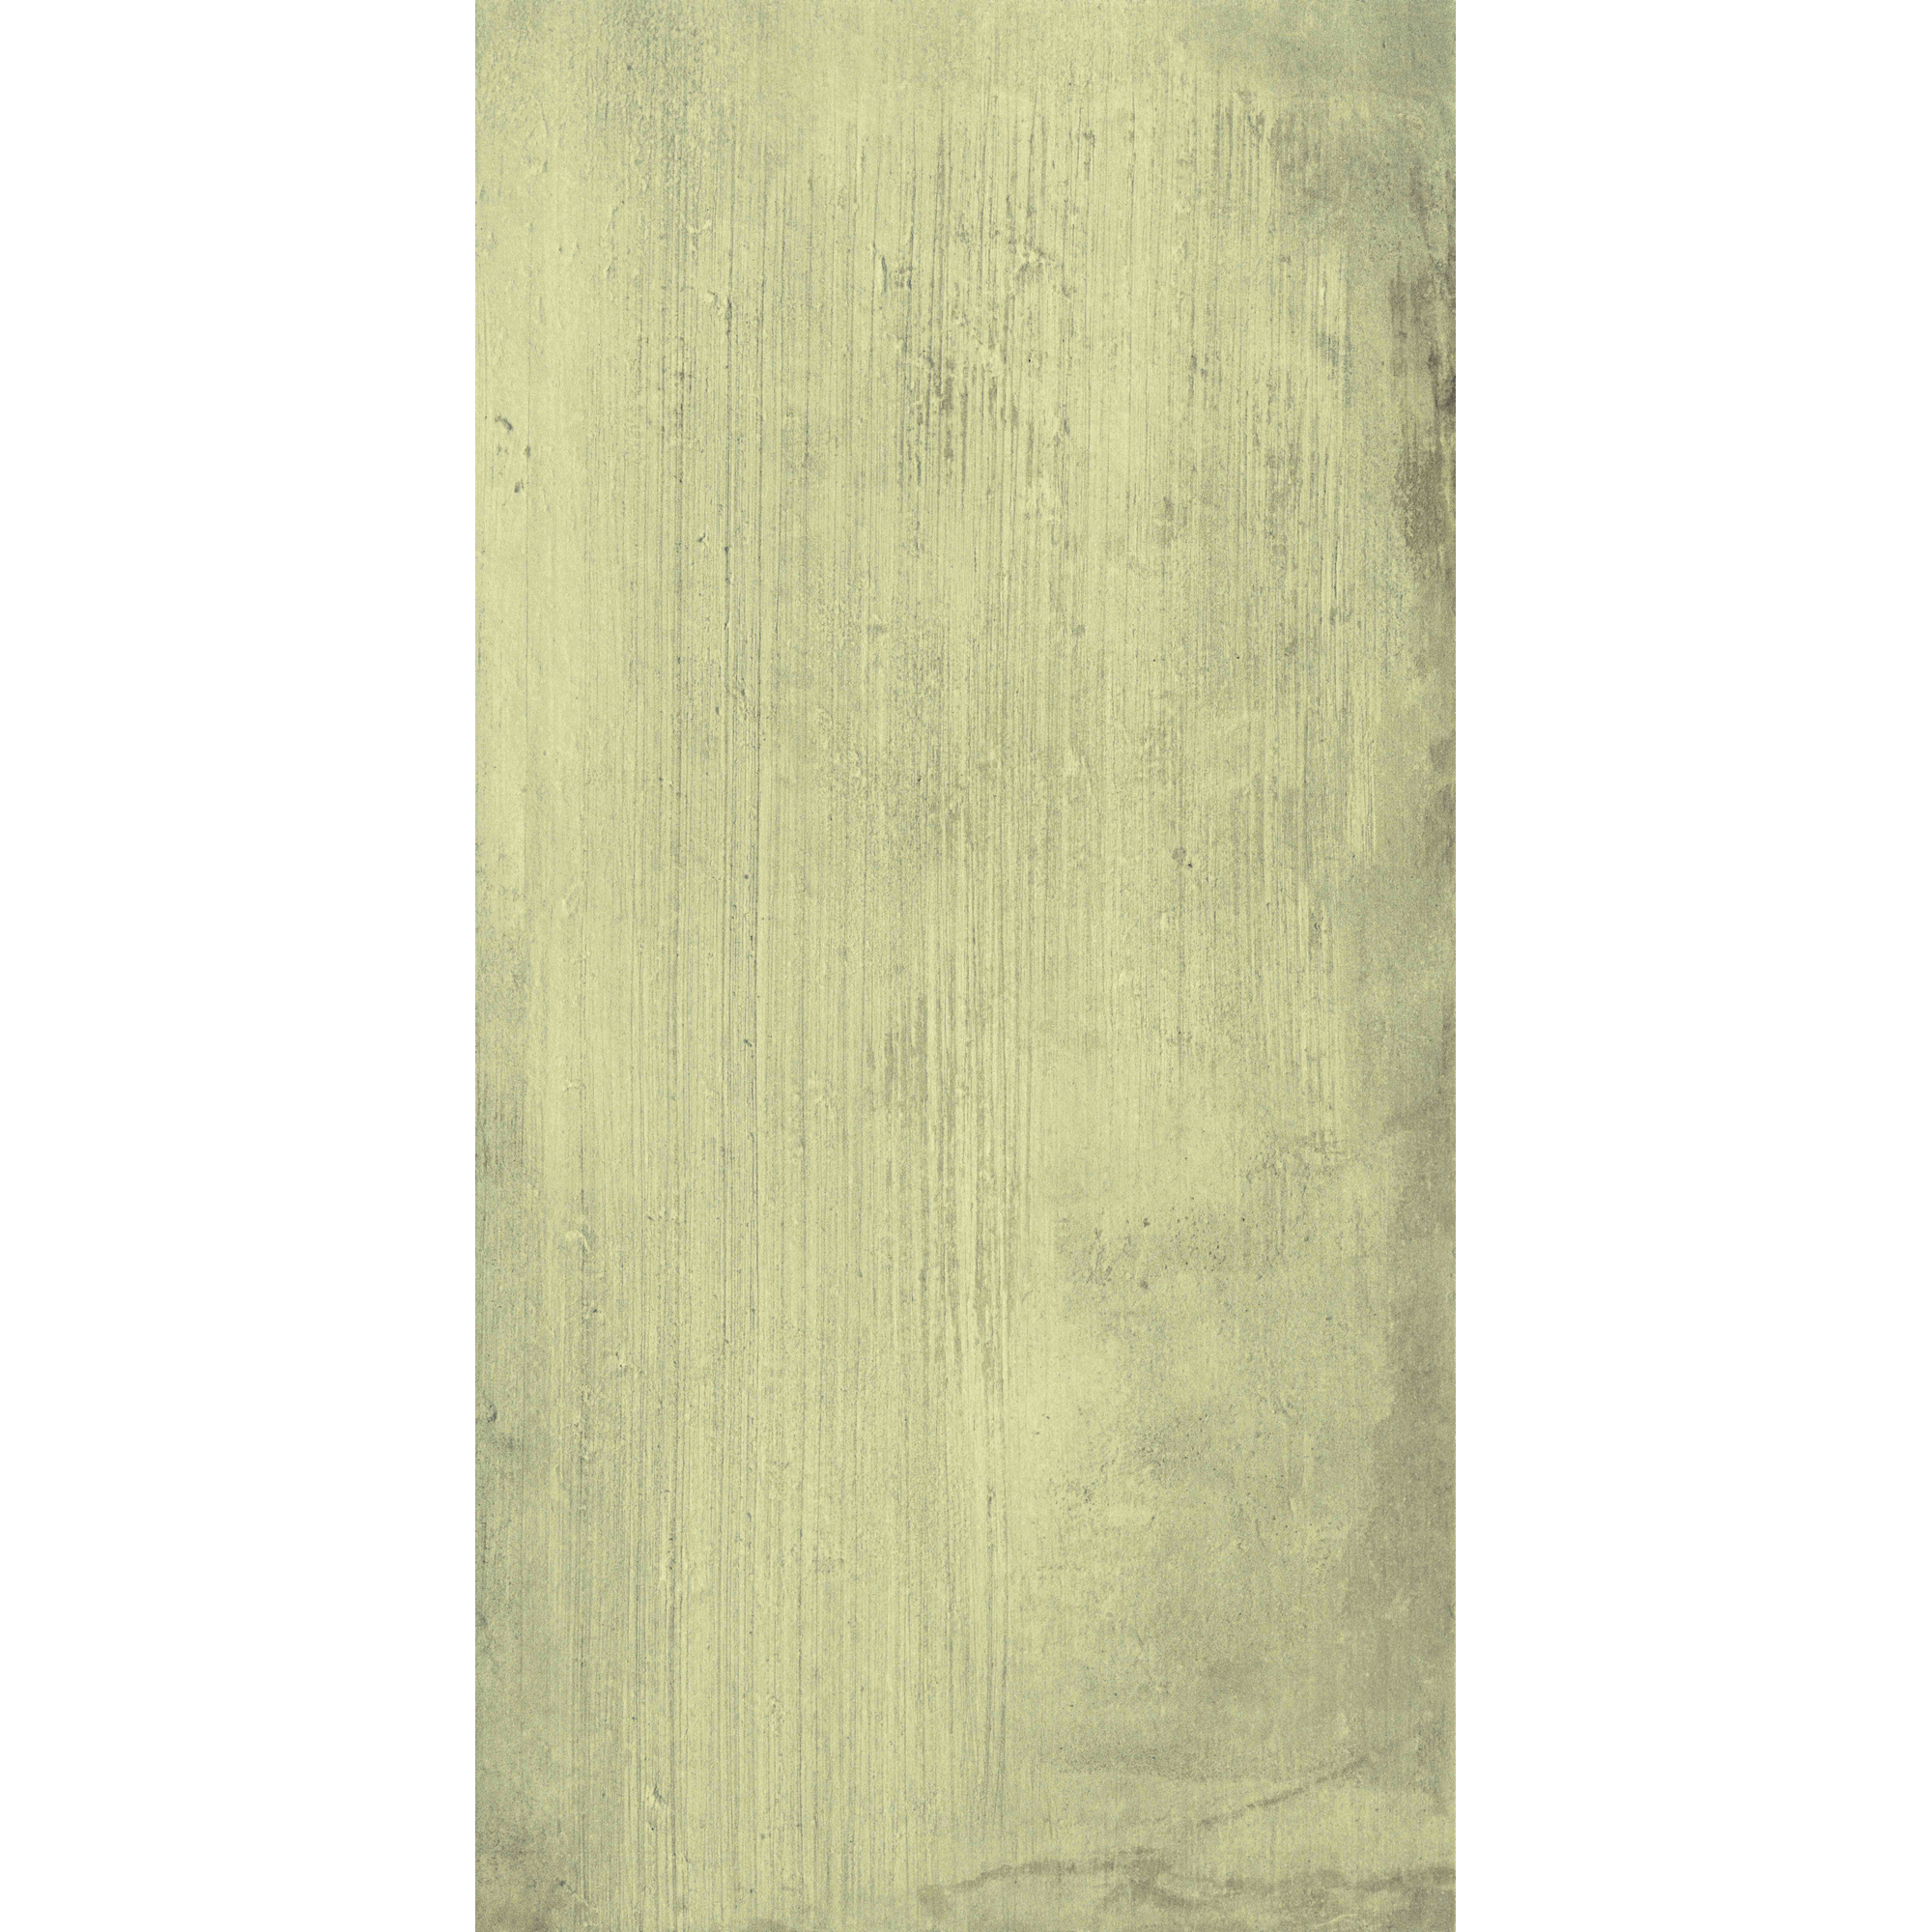 Bodenfliese 'Denver' grau 31 x 61,5 cm + product picture